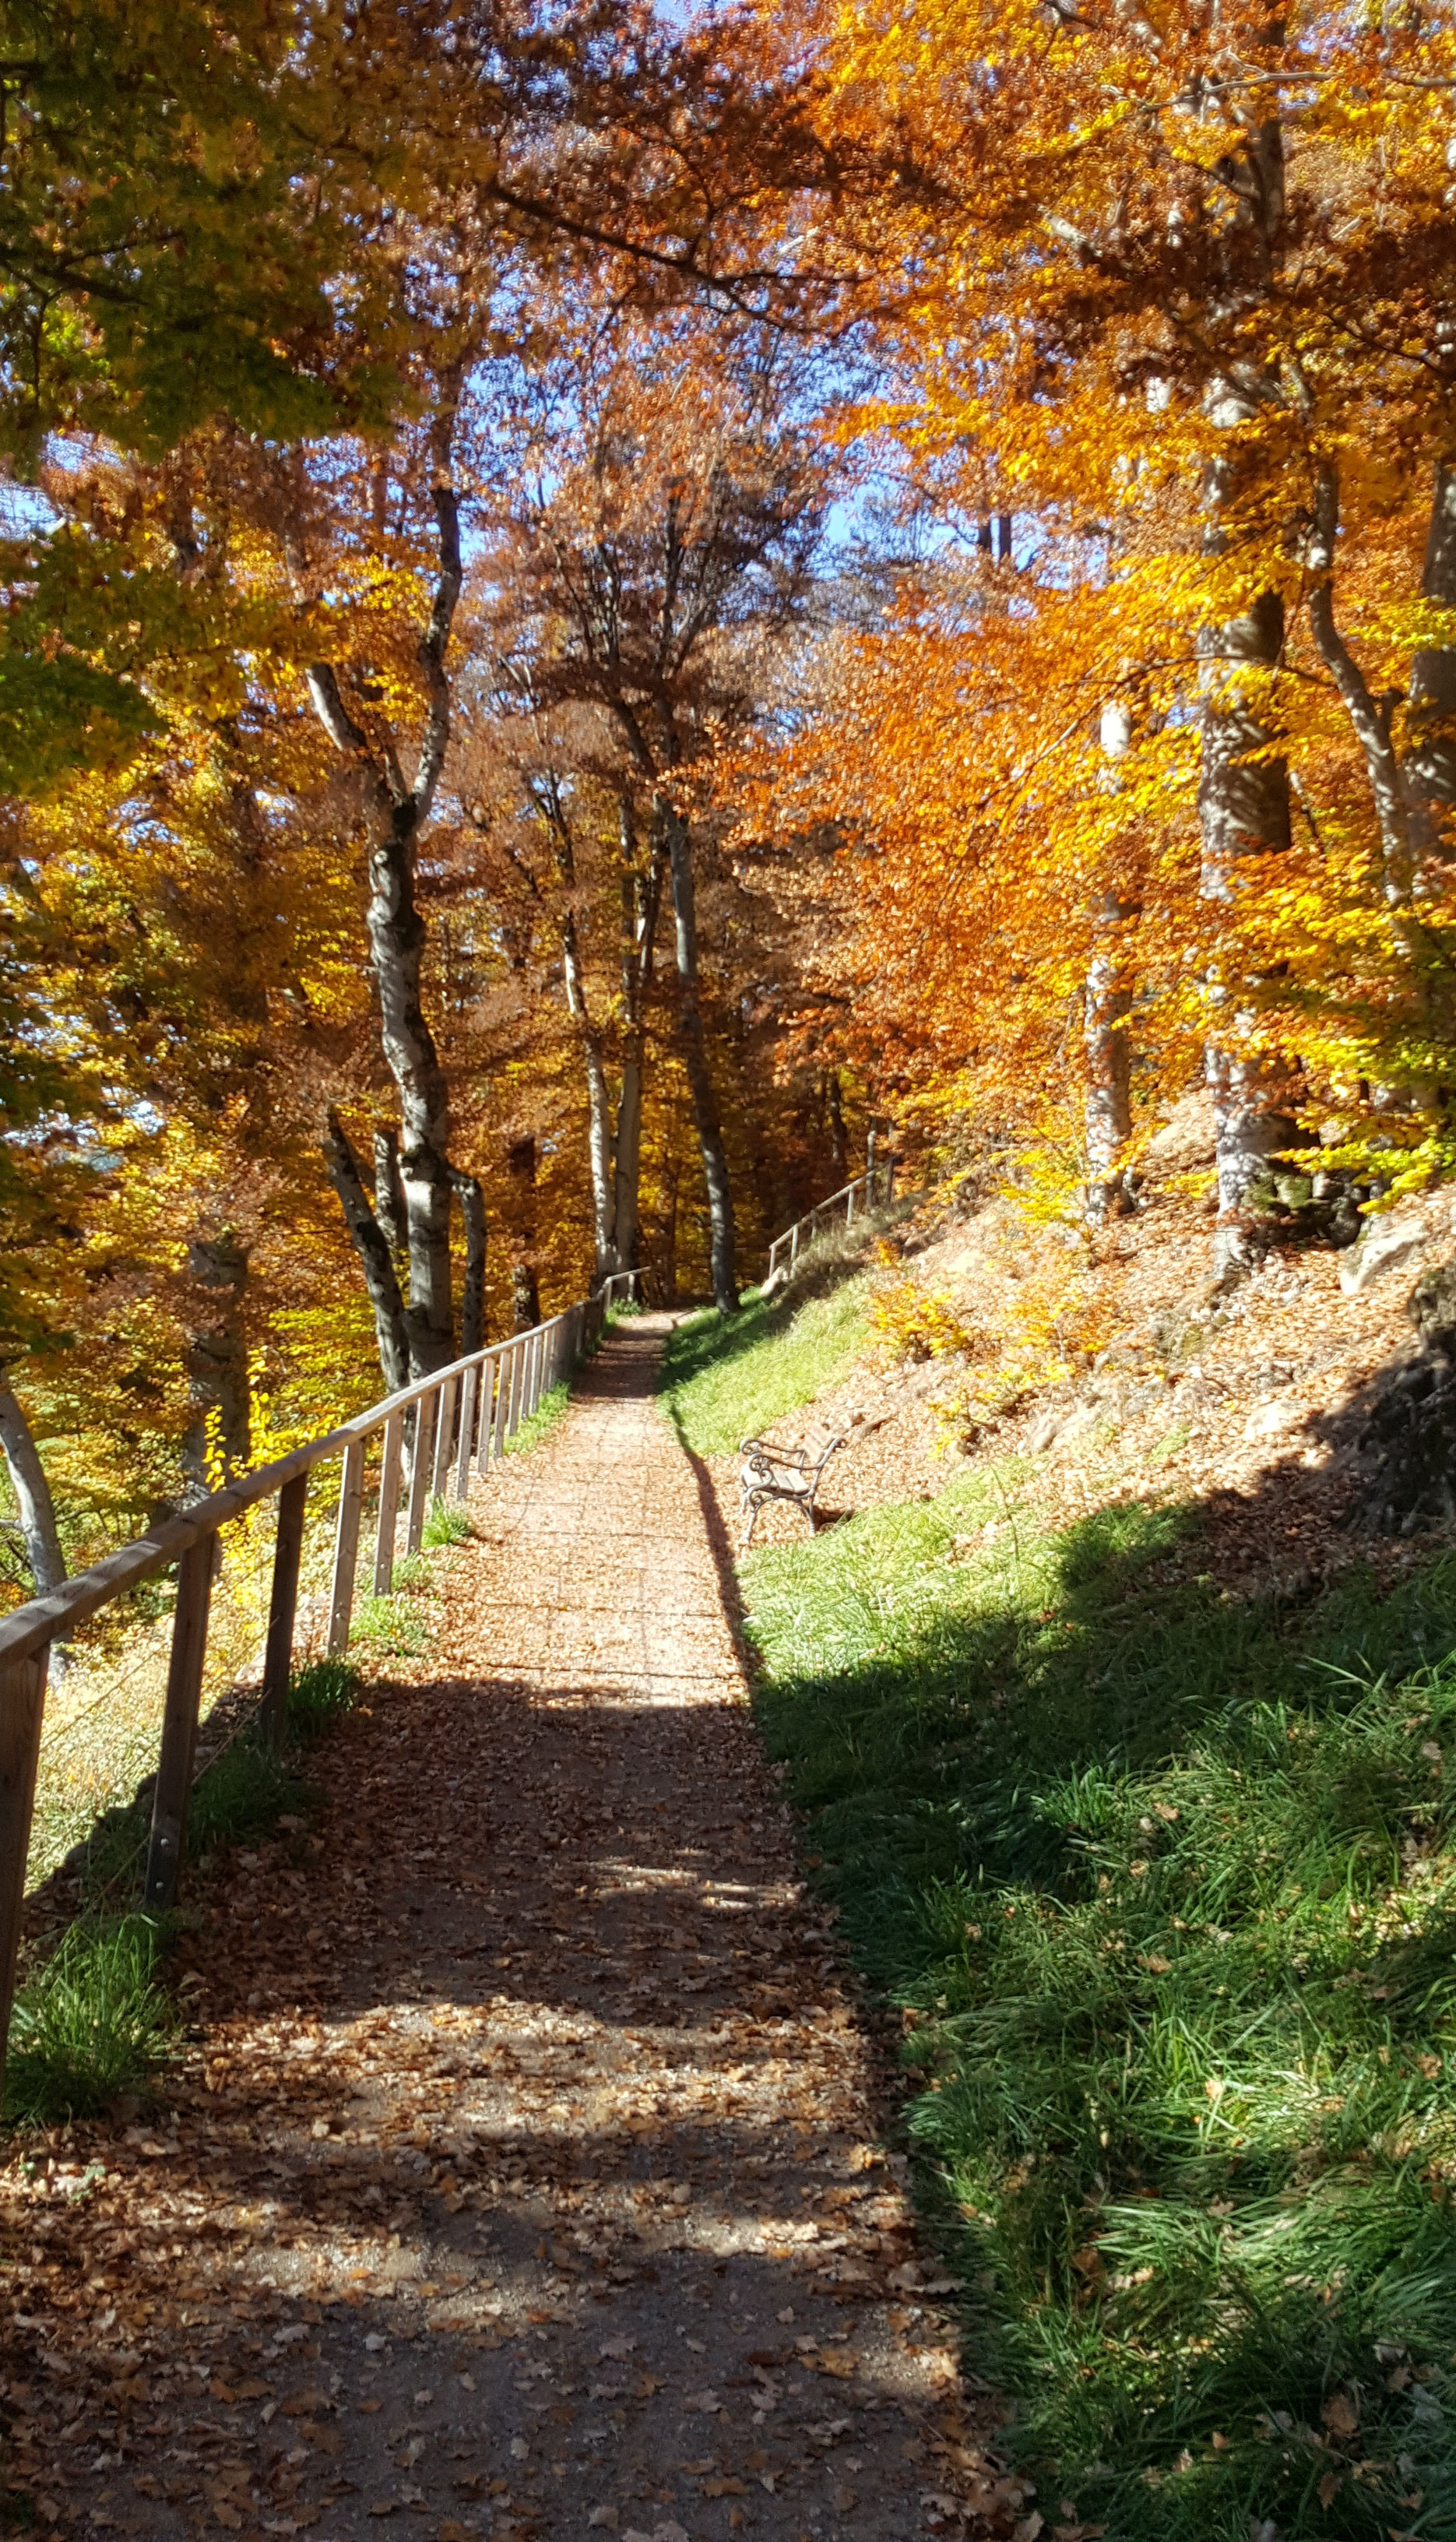 Promenade "von Eyrl" in autumn